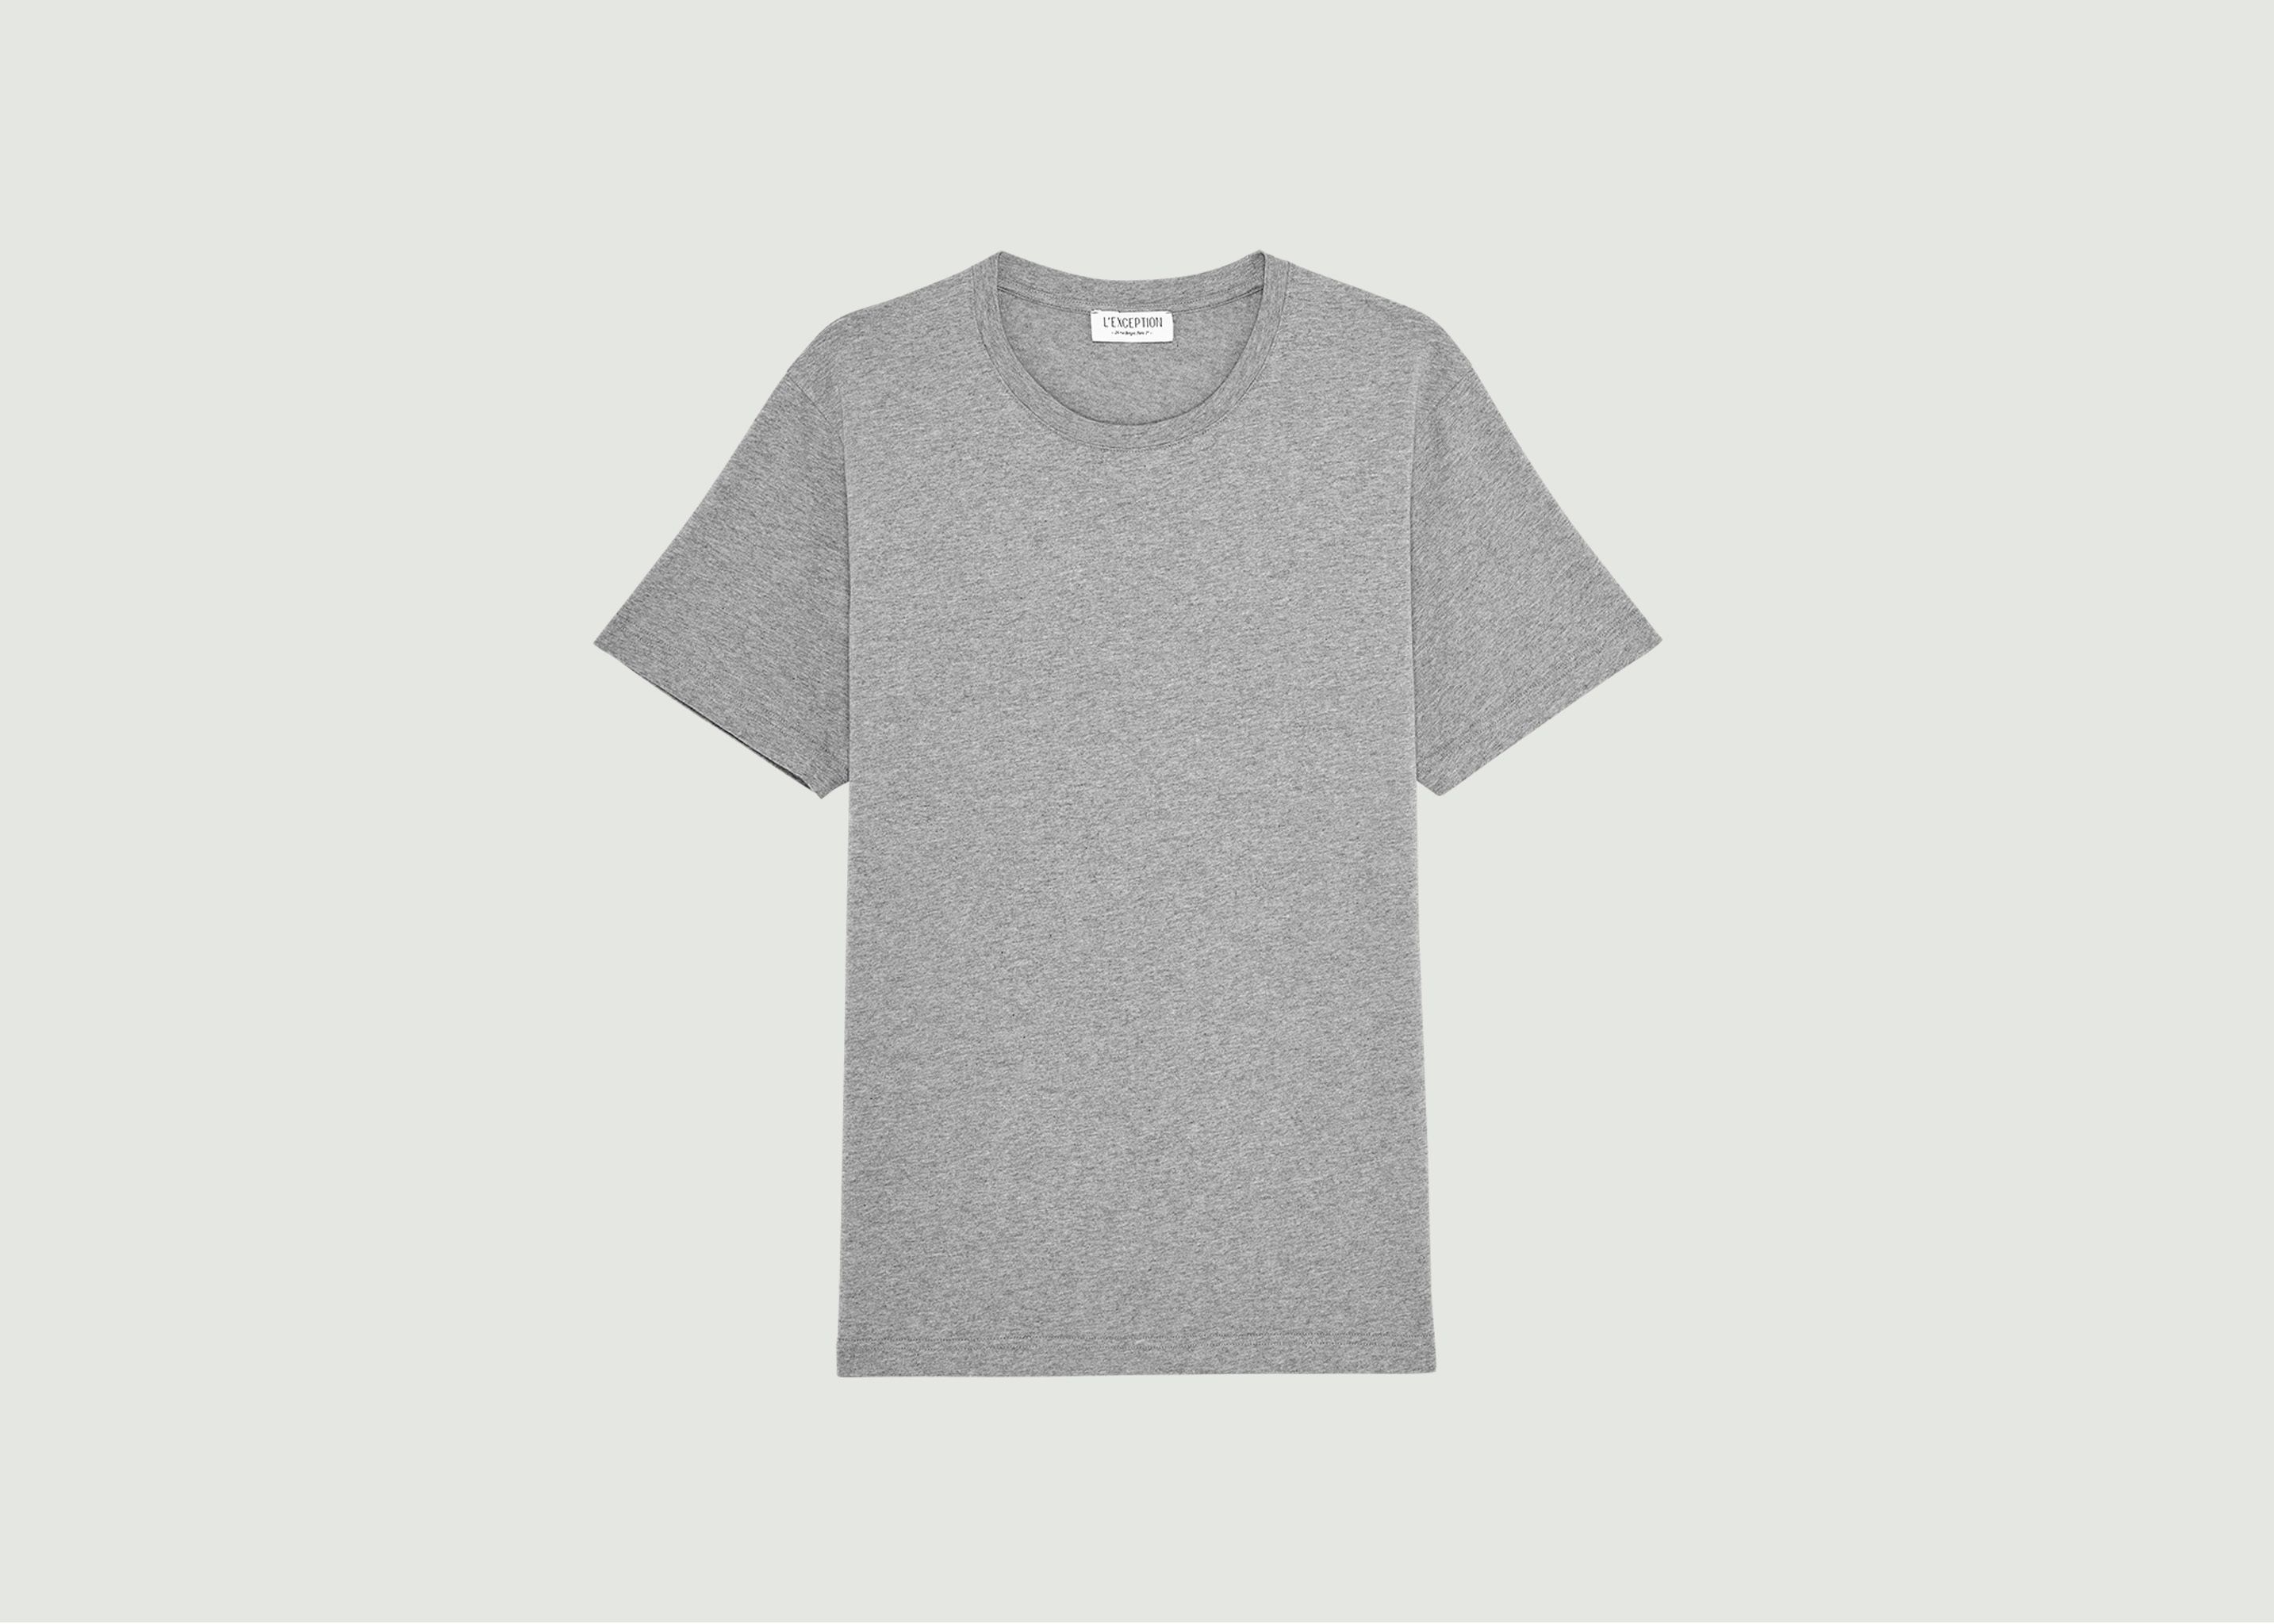 Organic cotton shirt - L'Exception Paris